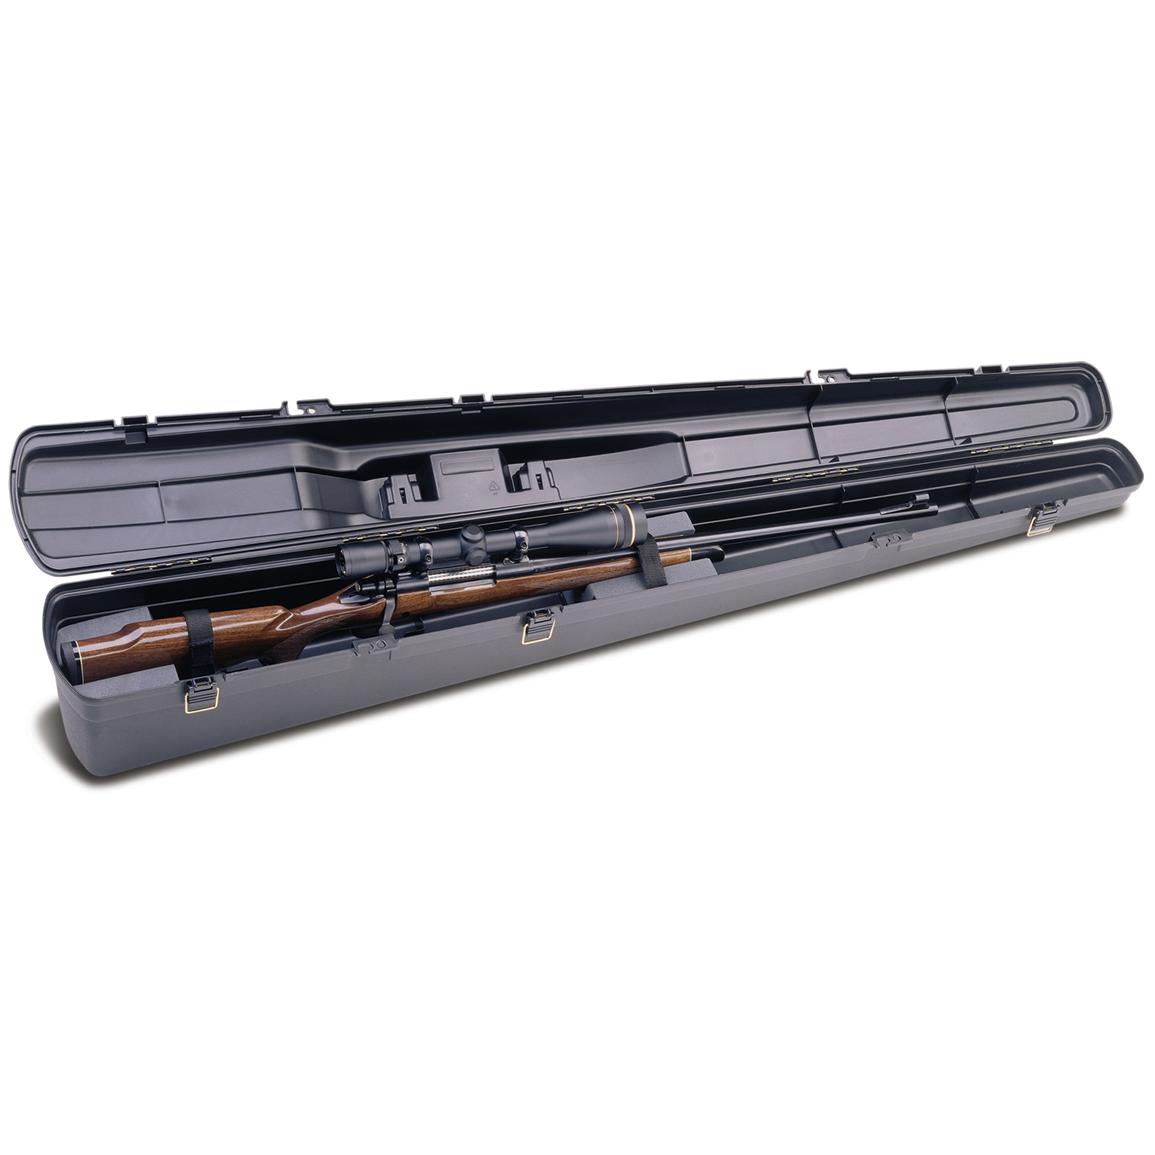 Single scoped rifle hard case